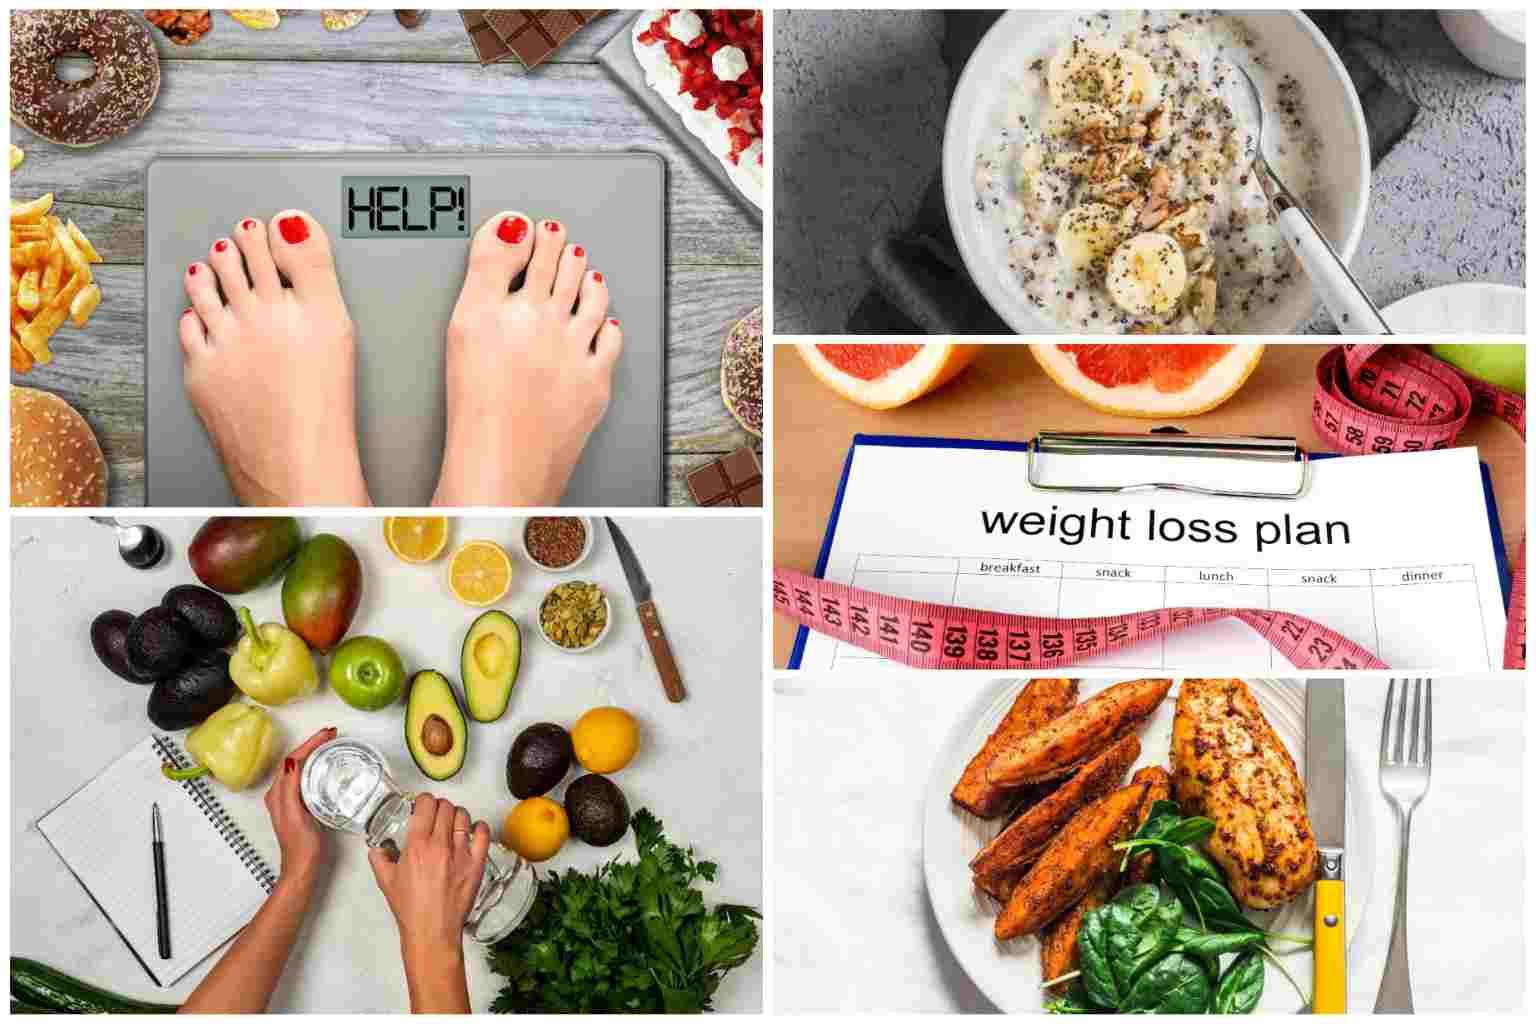 Phần lớn những người gặp rắc rối trong quá trình giảm cân tại nhà là đang ăn quá nhiều calo so với nhu cầu thực tế của cơ thể hoặc áp dụng sai các biện pháp giảm cân. Đồ họa: Bảo Thoa.